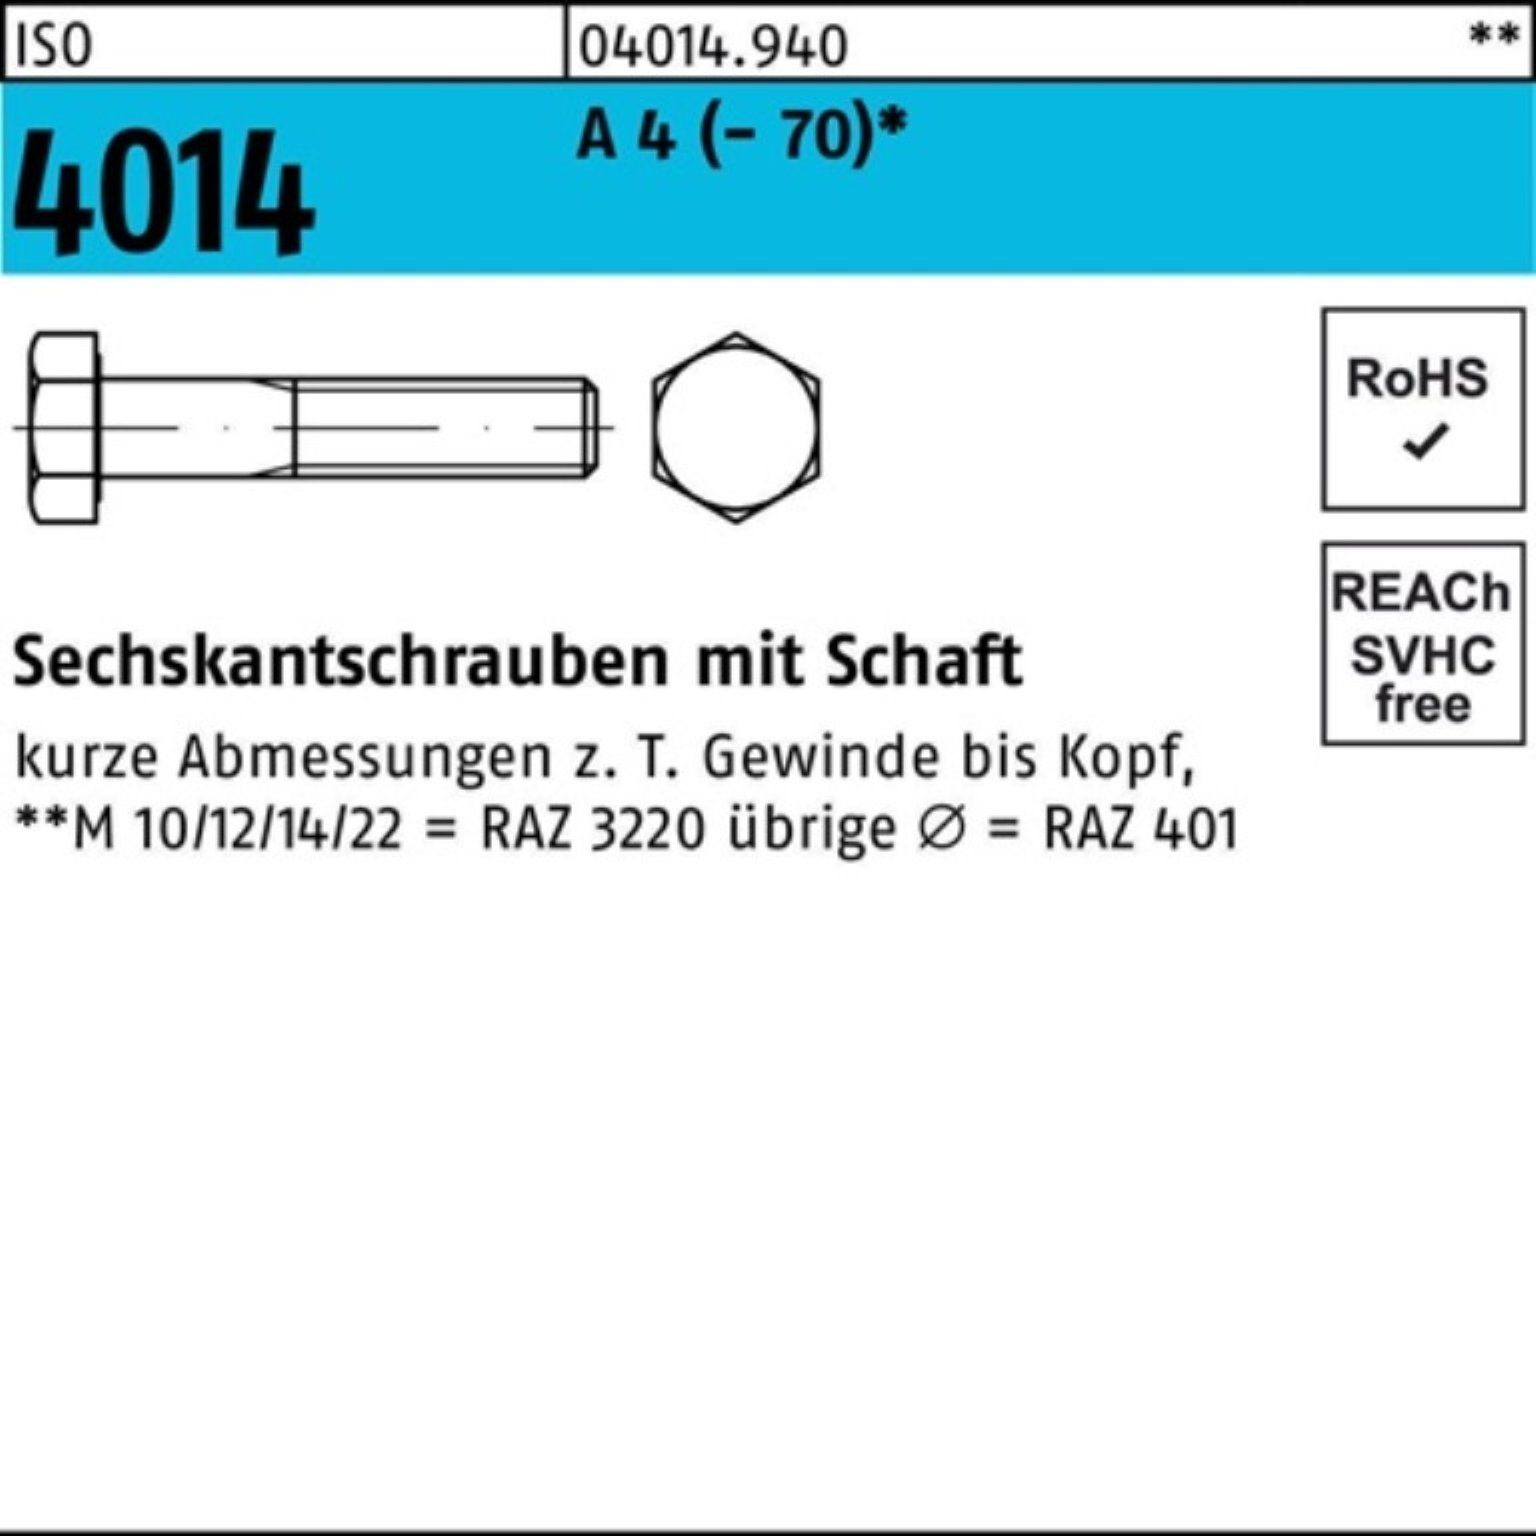 160 Bufab Schaft 4 A (70) Pack St 1 4014 M20x 100er Sechskantschraube Sechskantschraube ISO